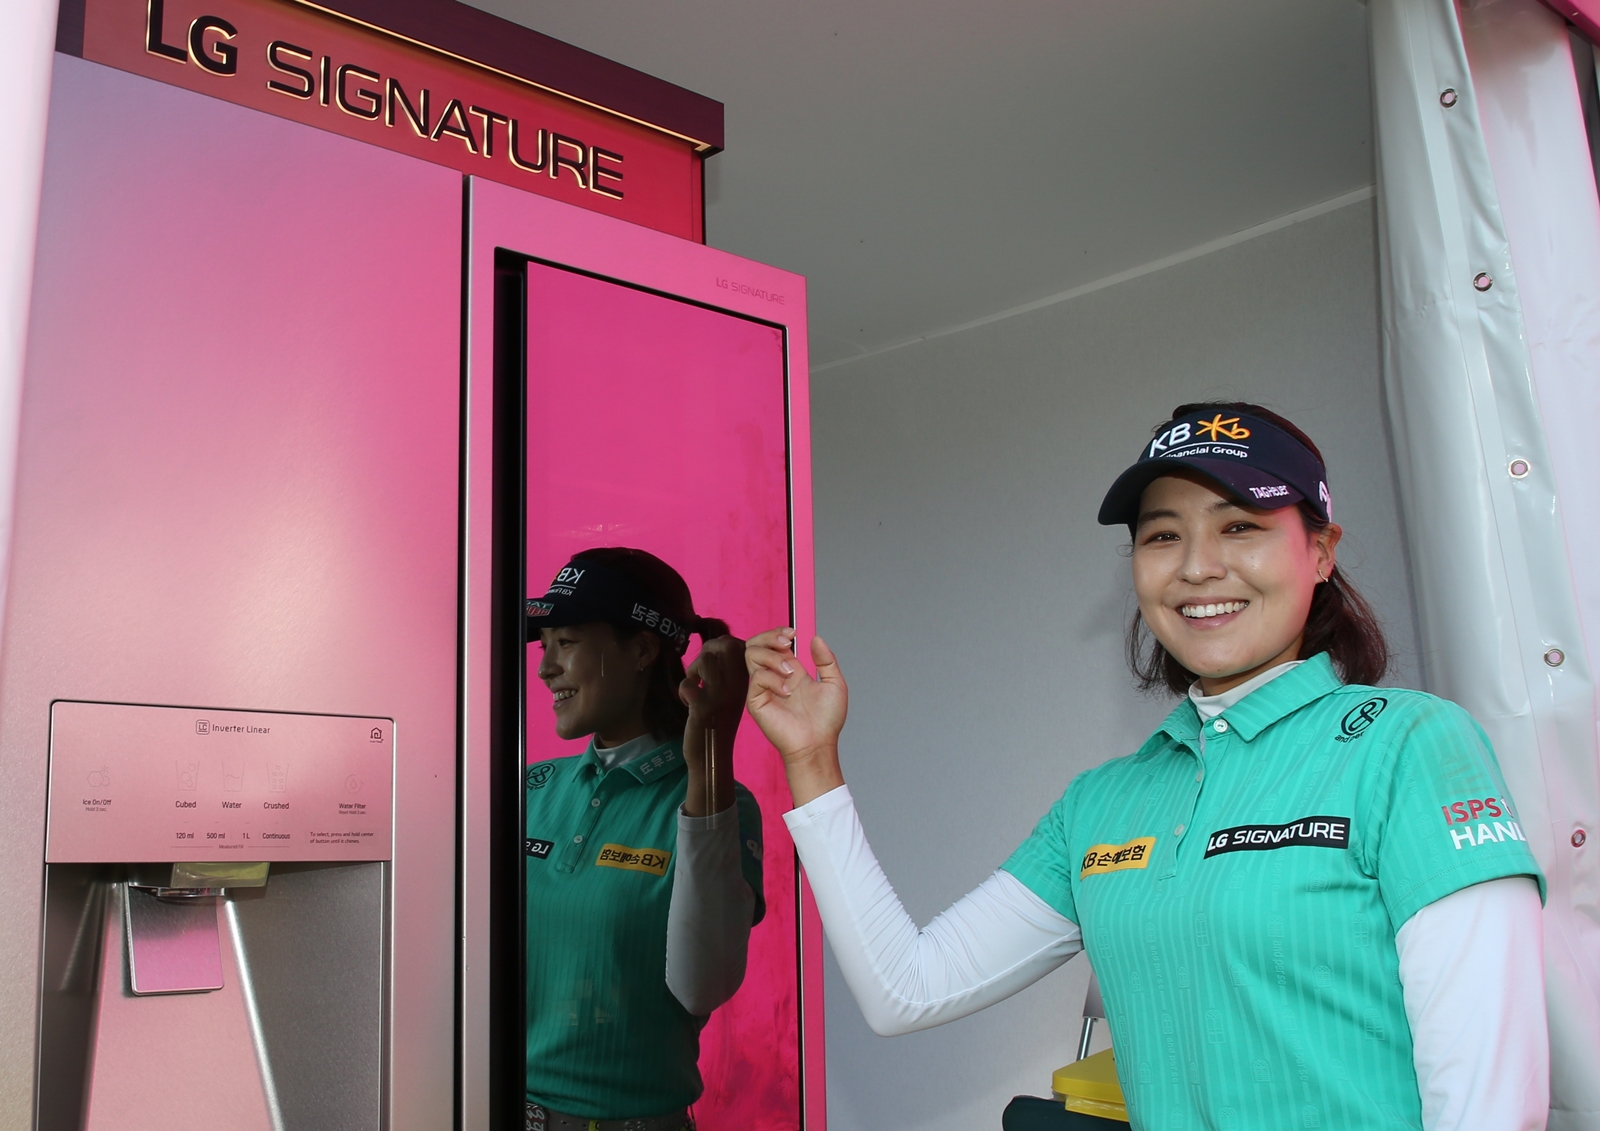 LG전자가 LPGA 메이저 골프대회인 ‘에비앙 챔피언십’에서 超프리미엄 ‘LG 시그니처’를 적극 알리고 있다. 전인지 선수가 LG 시그니처 냉장고를 체험하고 있다.